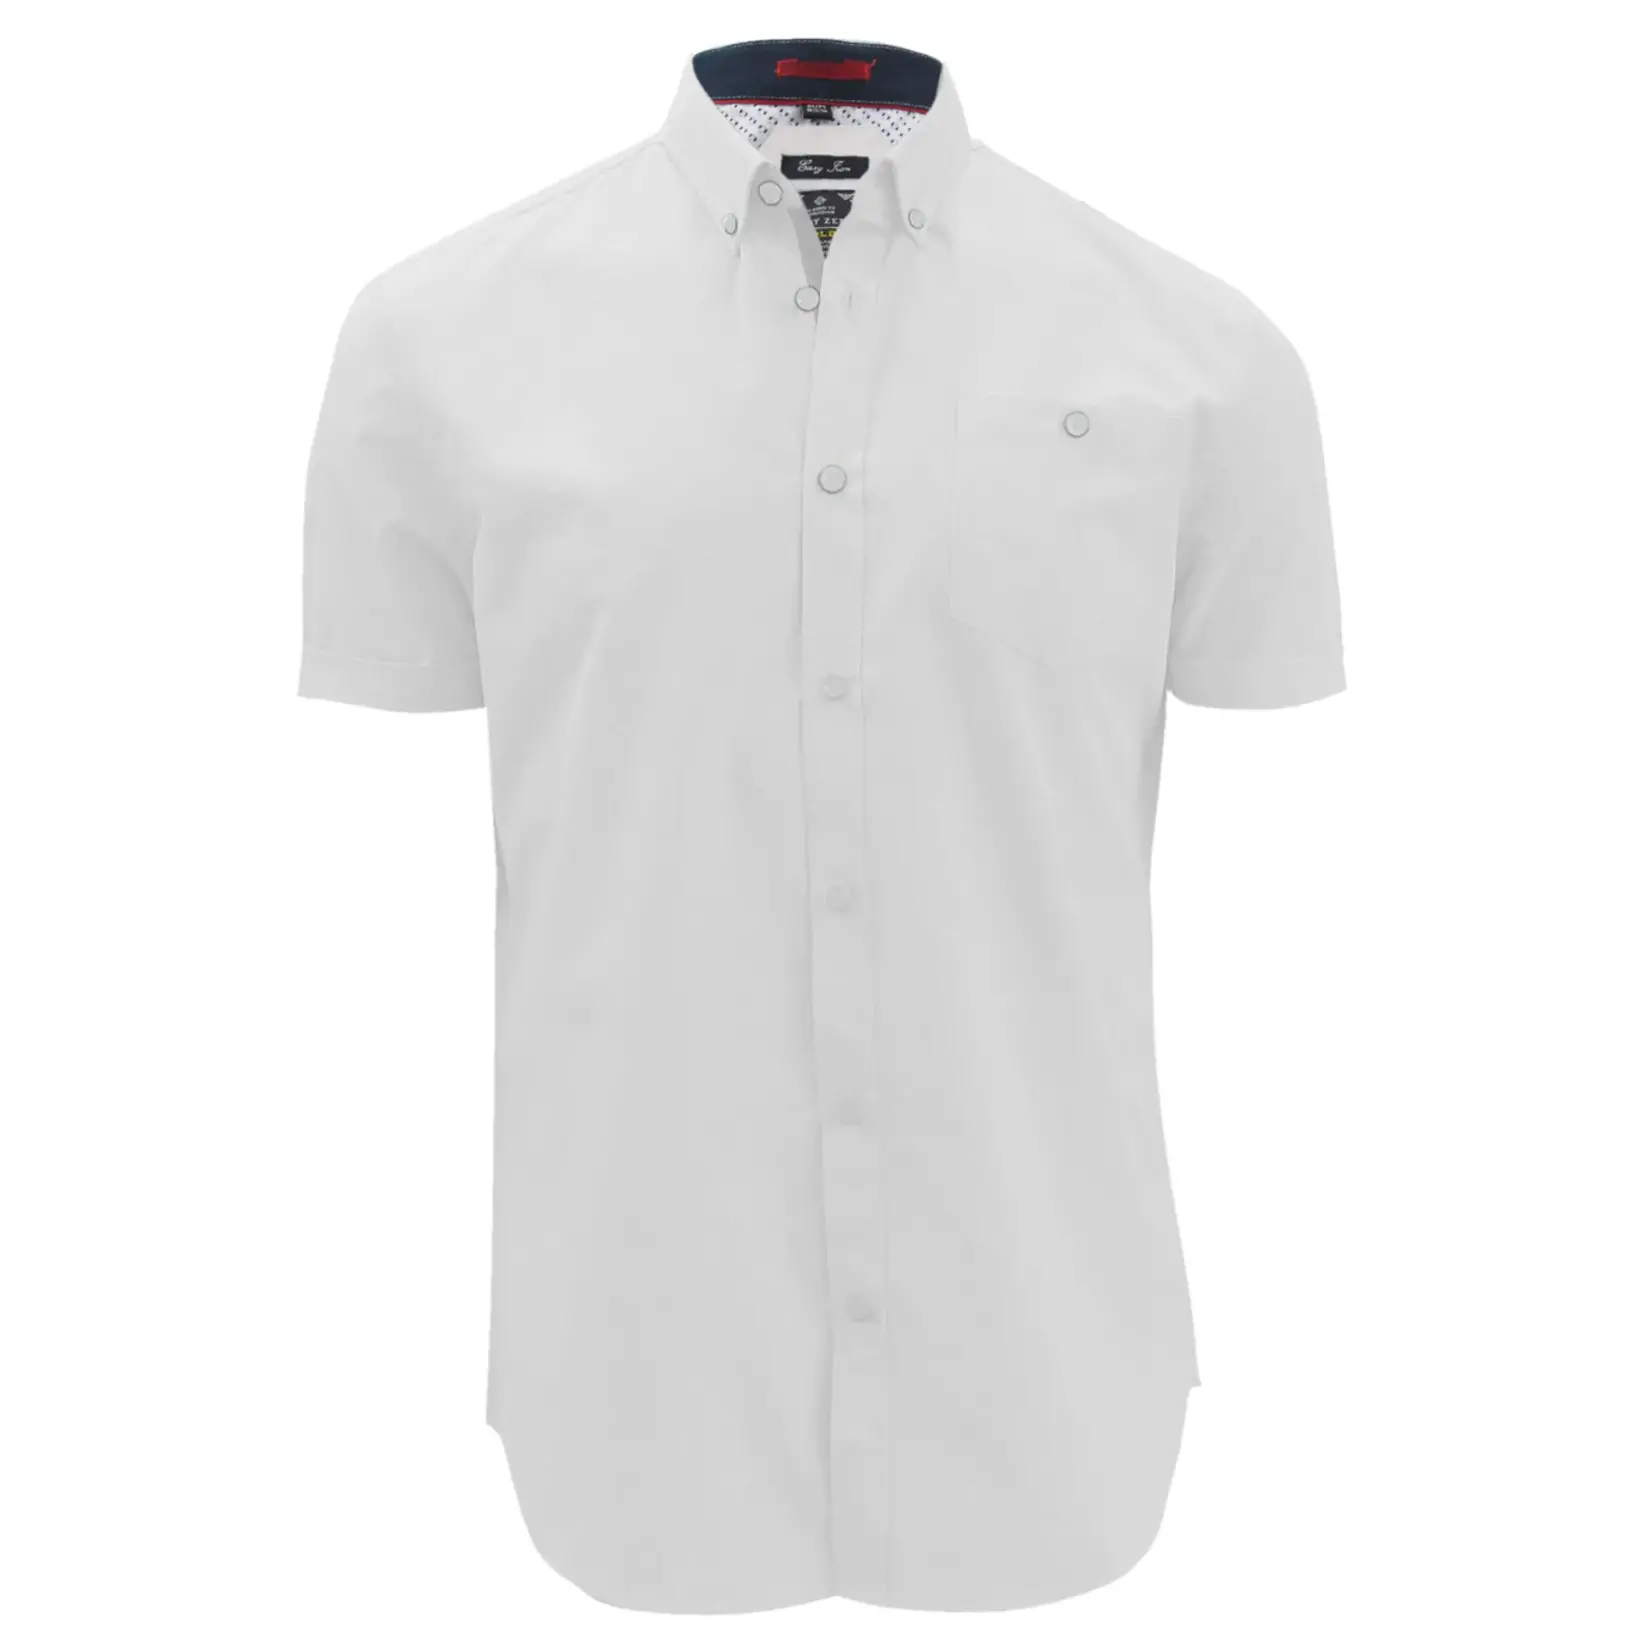 Point Zero Point Zero short sleeve poly/cotton button shirt